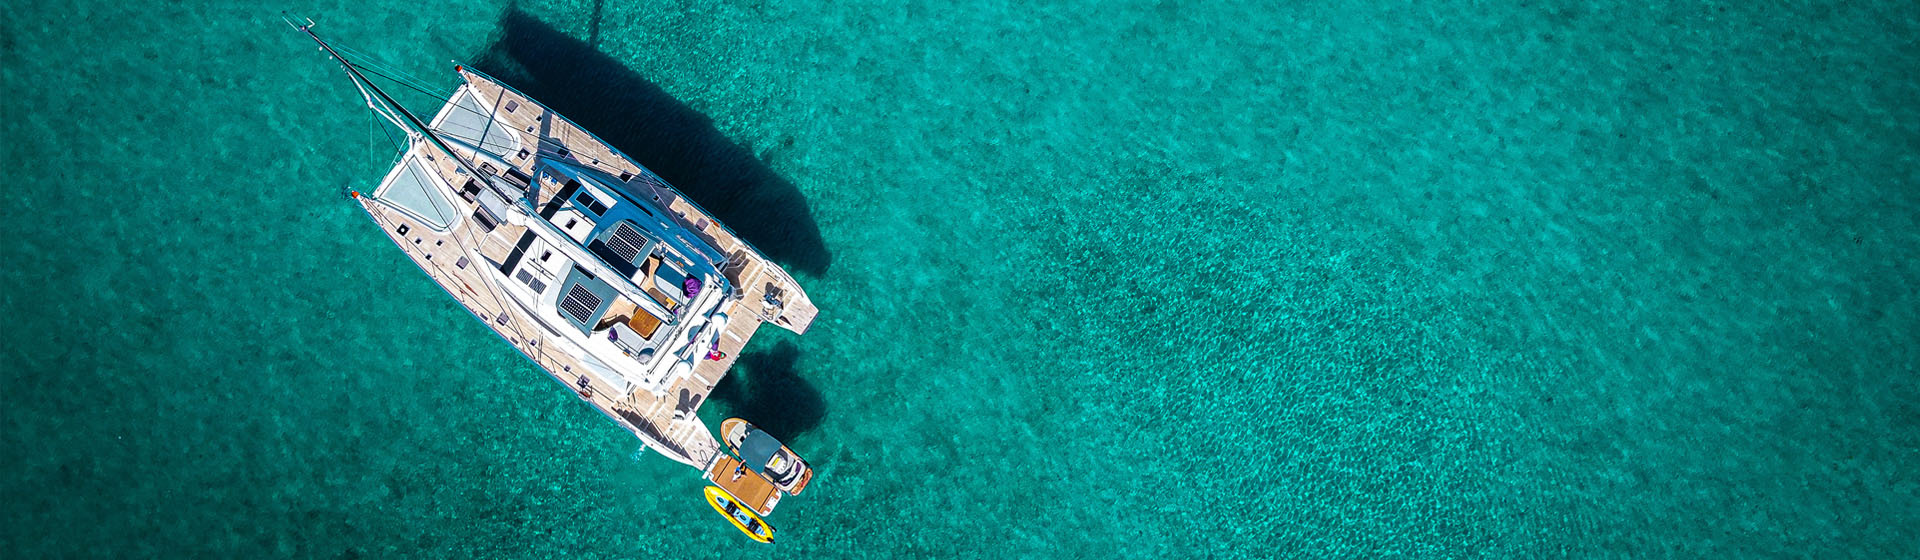 Vista dall'alto del catamarano di lusso Privilège Serie 740 su una calma acqua blu tropicale